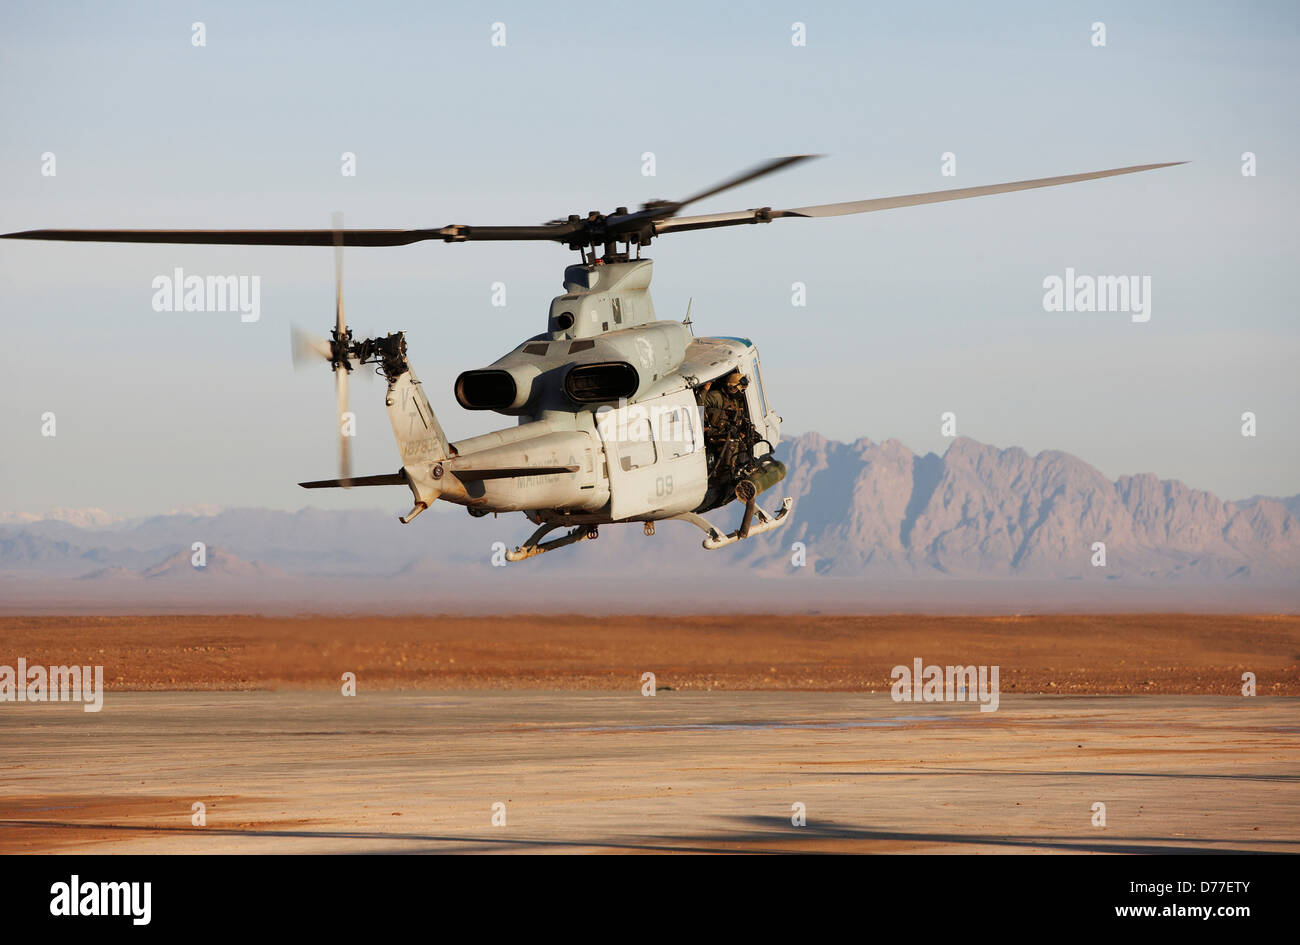 Corpo della Marina degli Stati Uniti UH-1Y Venom elicottero lancia sul funzionamento di combattimento nella provincia di Helmand in Afghanistan Foto Stock